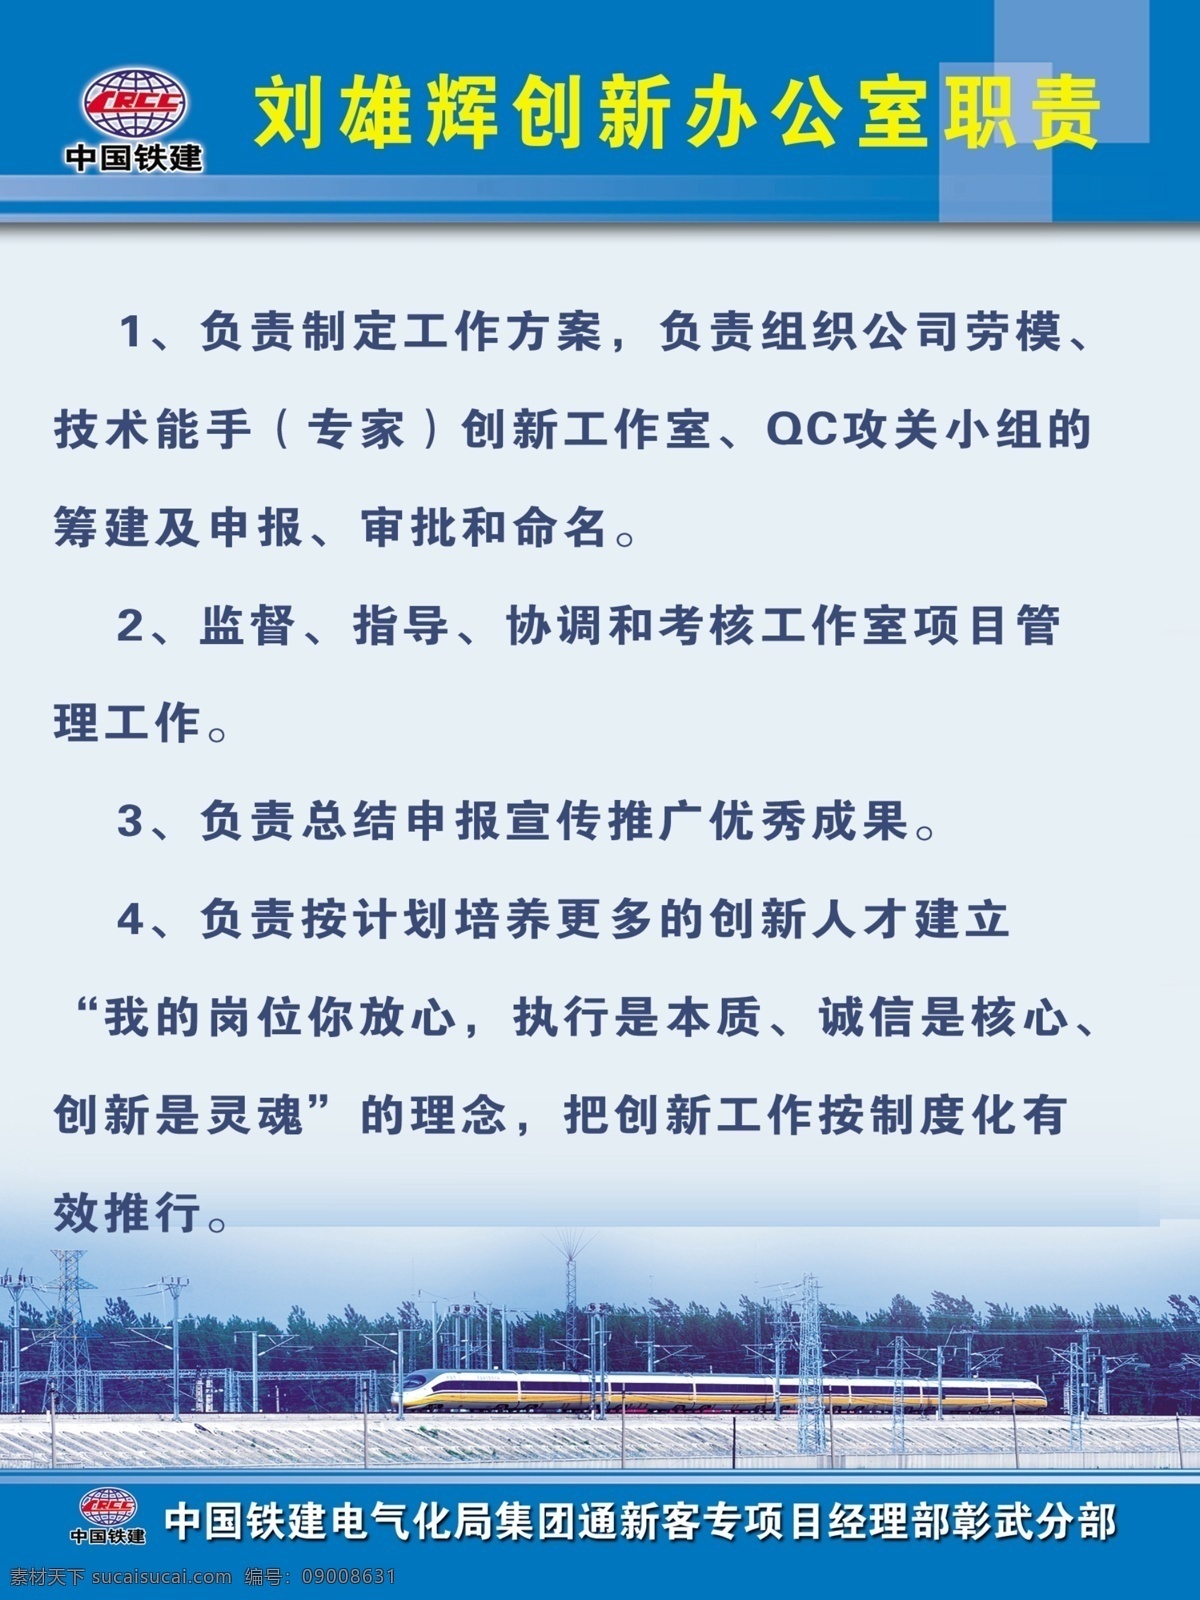 高铁图版 图版 中国铁建 中国高铁 铁路图版 现代科技 交通工具